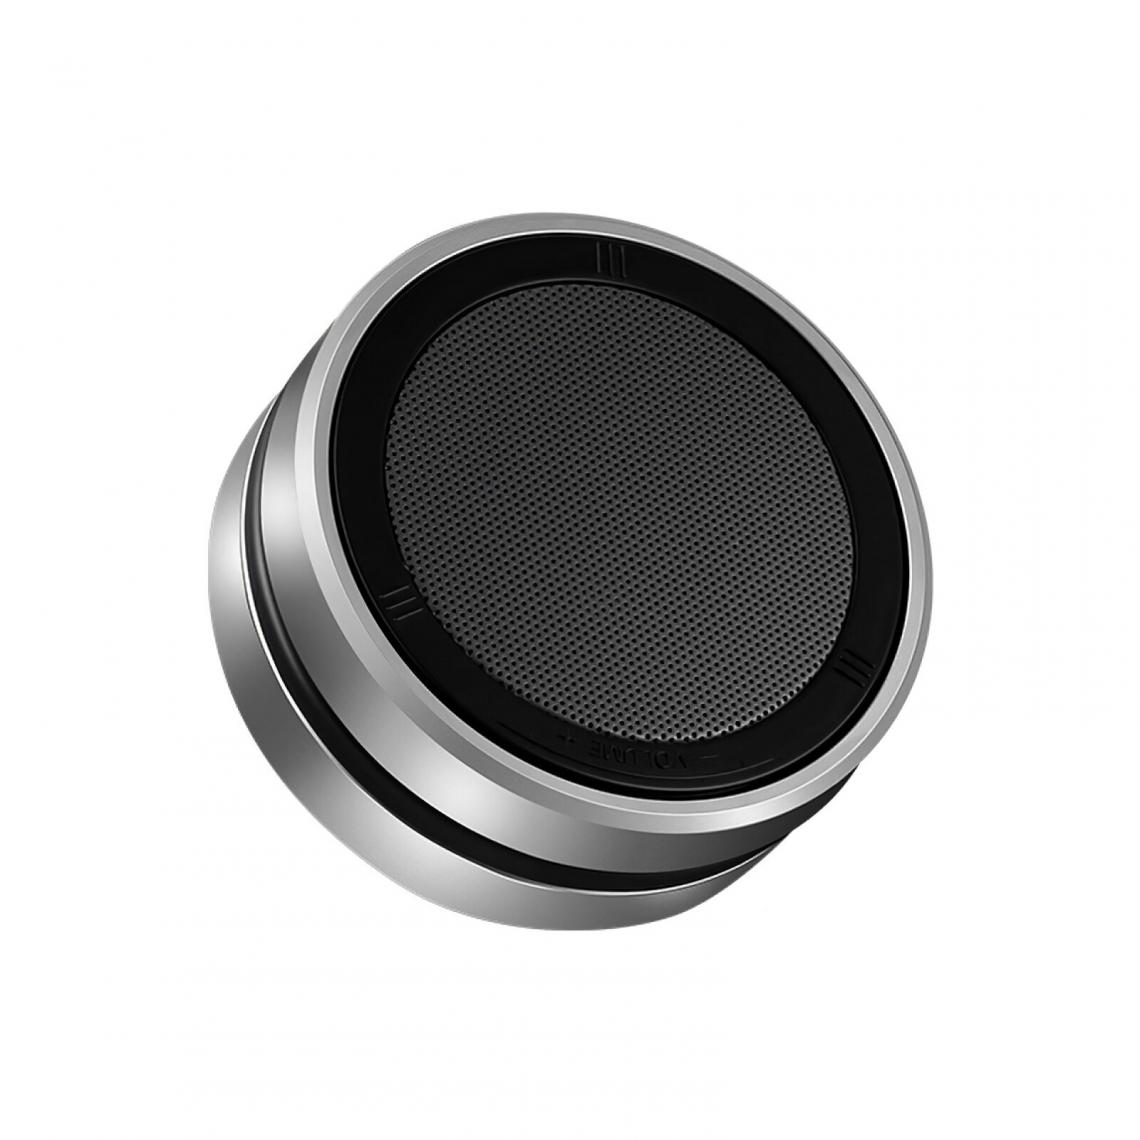 Universal - Haut-parleur Bluetooth portable sans fil Mini haut-parleur Bluetooth Lecteur de musique stéréo HD Stéréo rotatif à 360 degrés | Haut-parleur portable (argent) - Hauts-parleurs